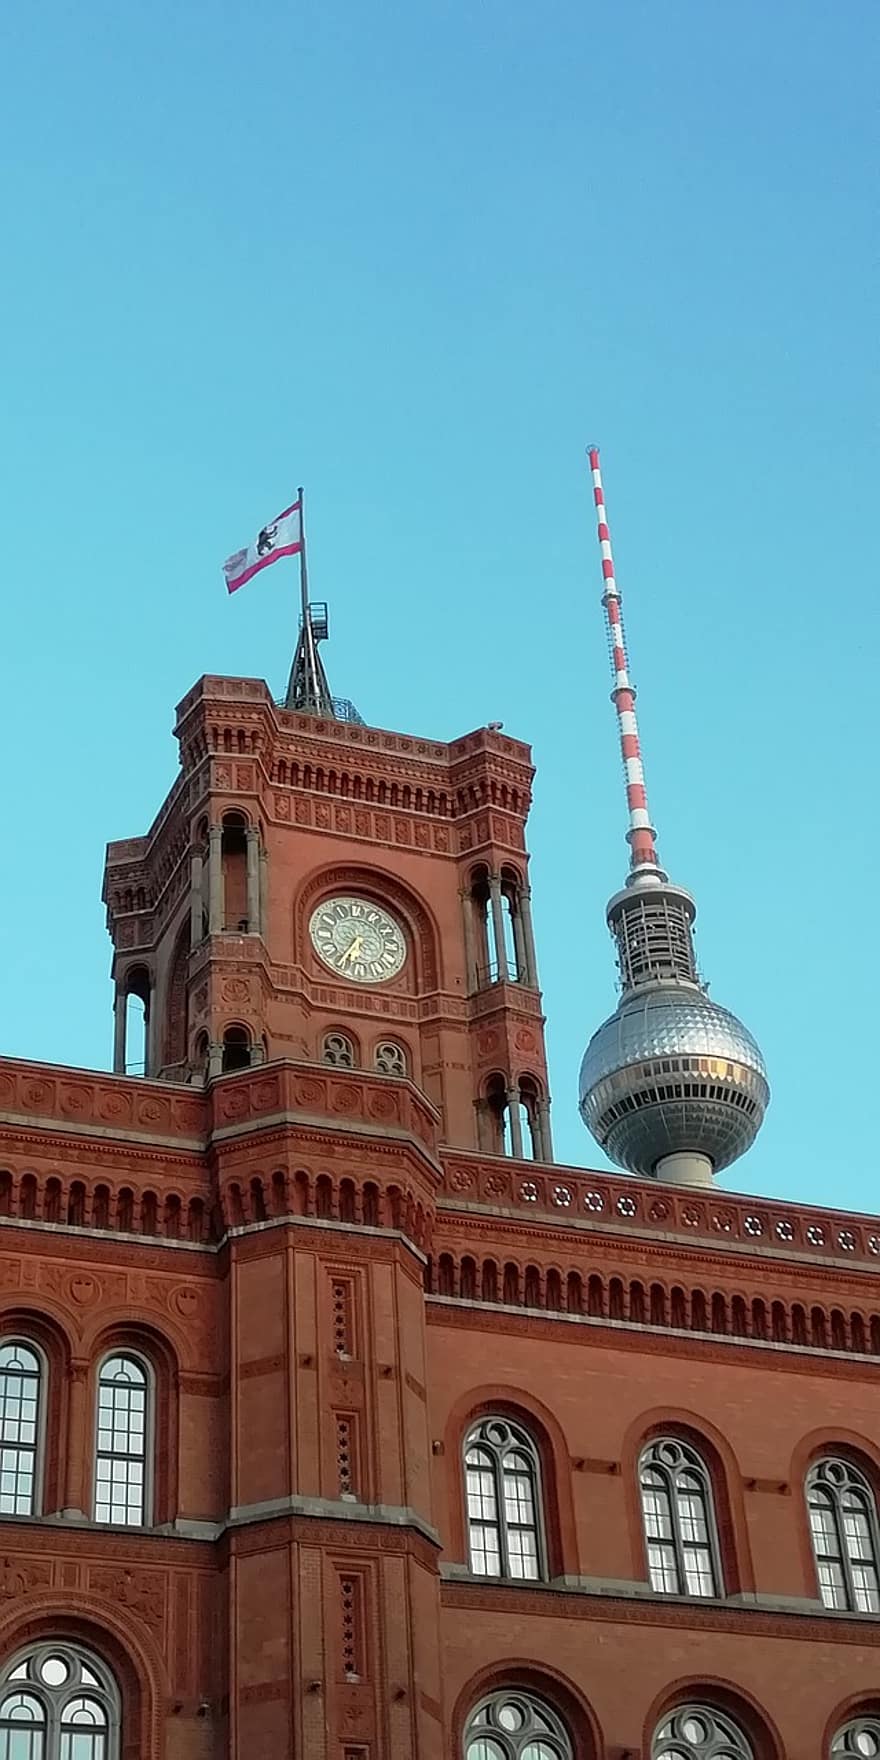 budynek, architektura, wieża zegarowa, Ratusz, Berlin, czerwony ratusz, wieża telewizyjna